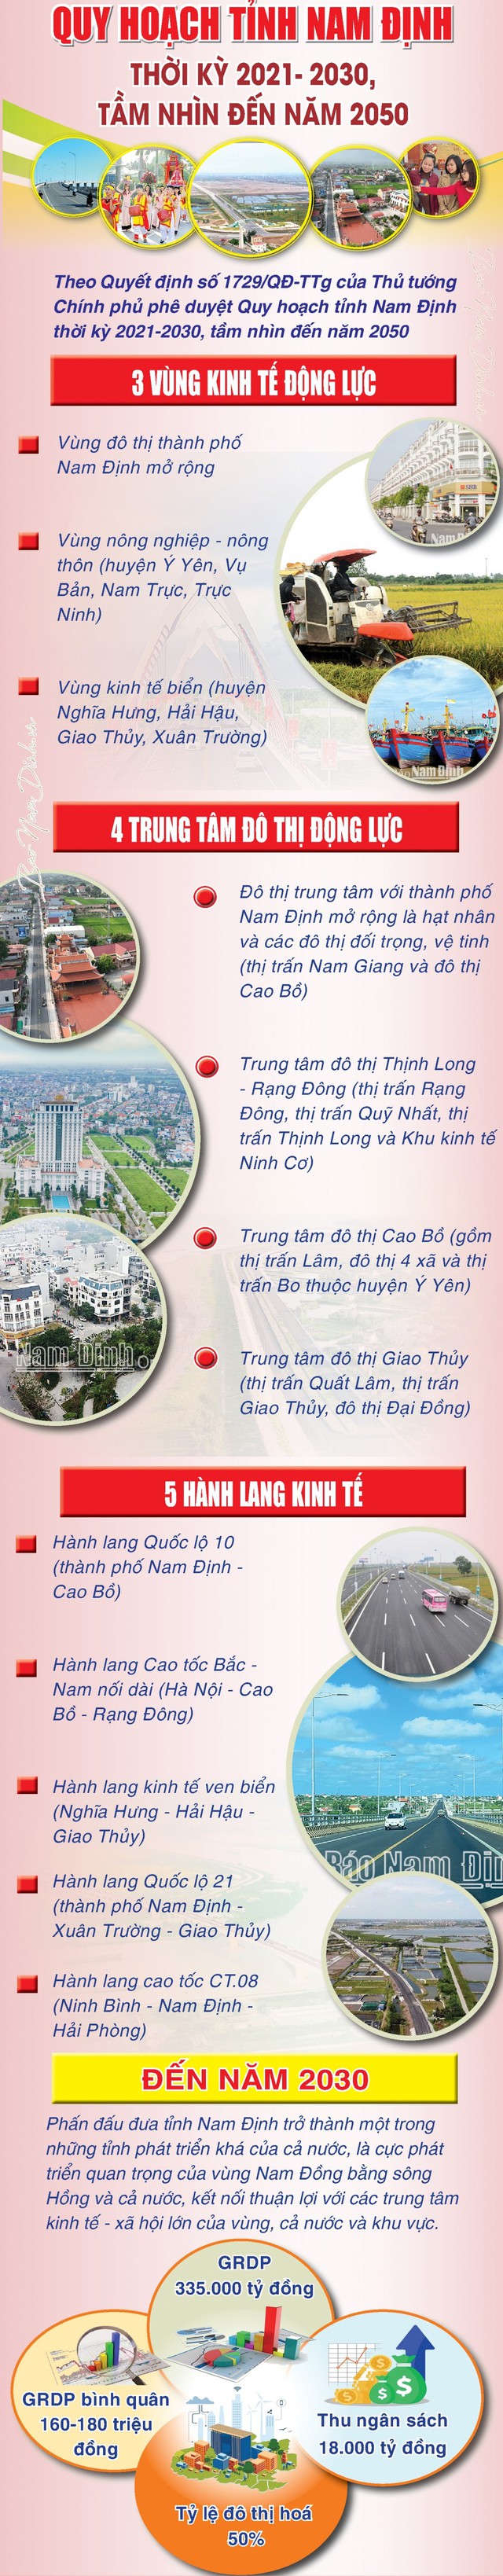 Mở rộng địa giới, phát triển thành phố Nam Định trở thành đô thị loại I; thành lập 10 đô thị mới- Ảnh 2.